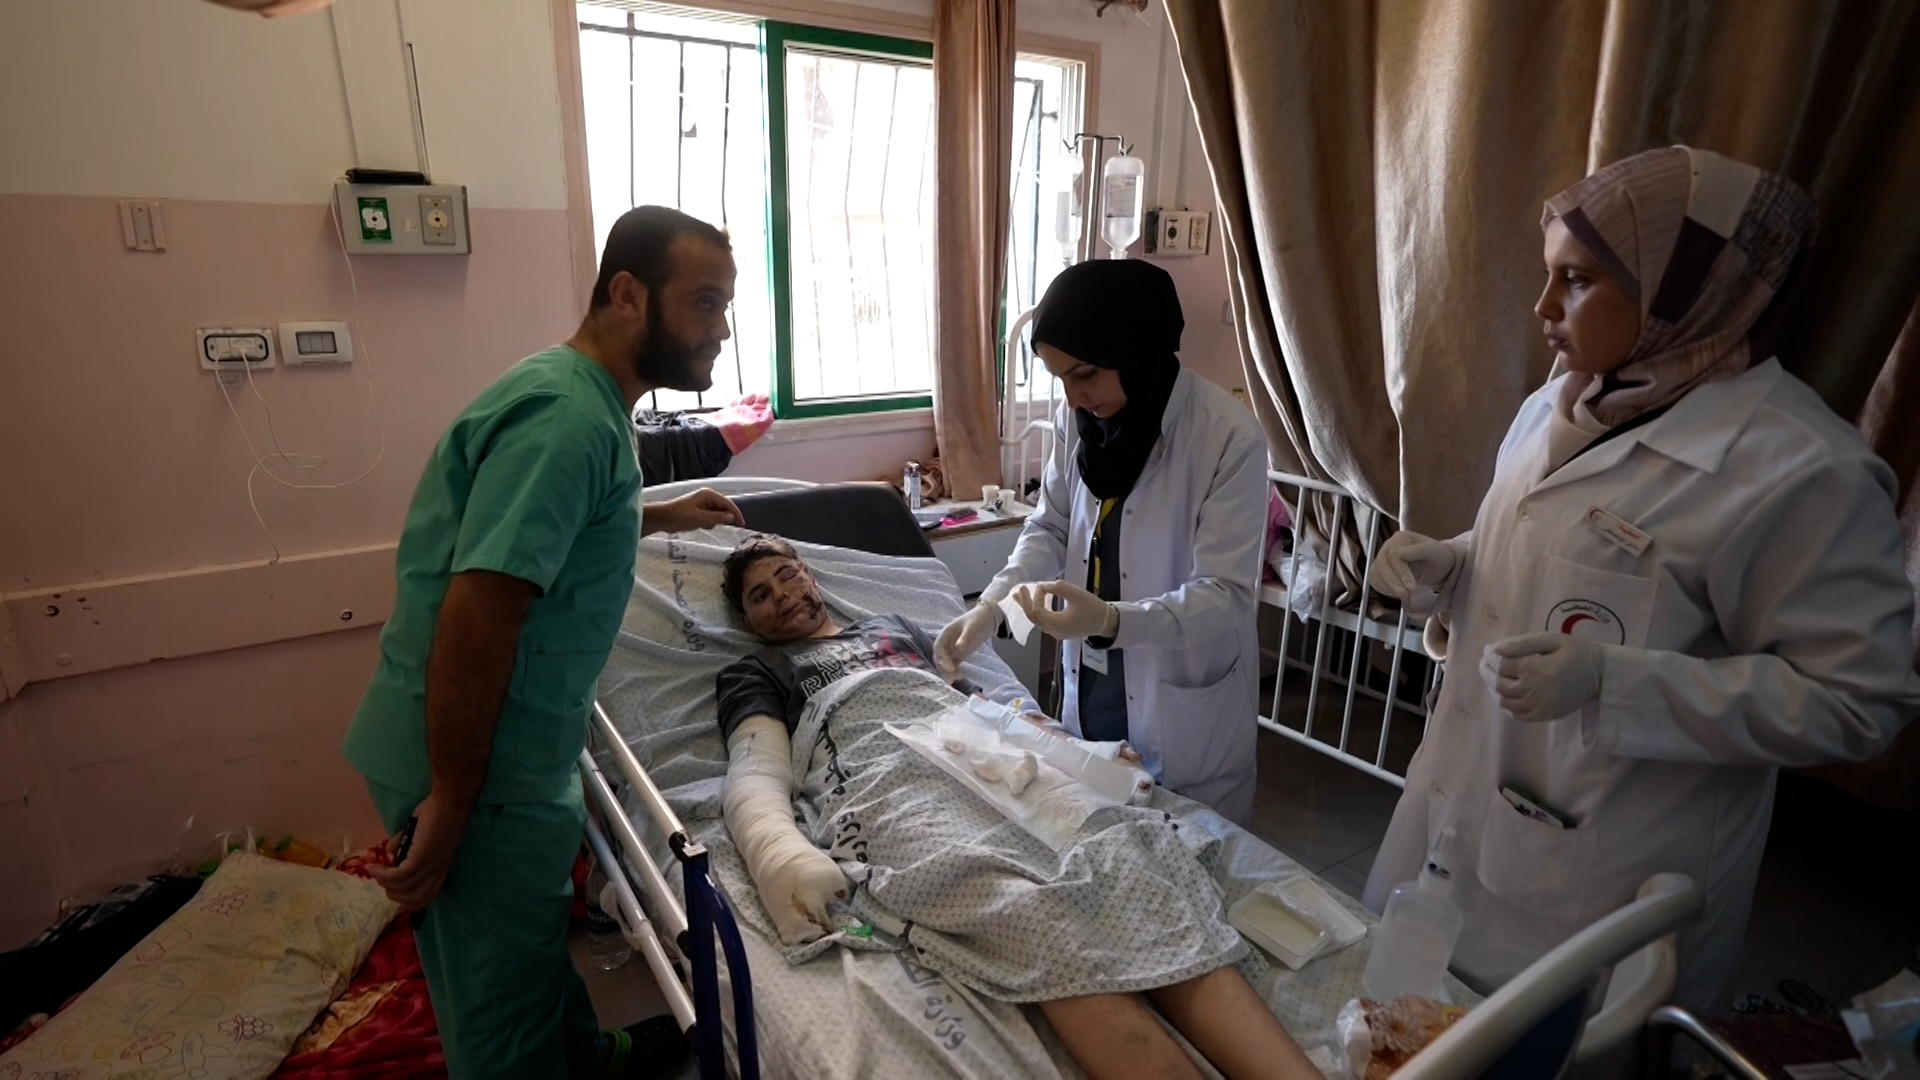 معاناة الفرق الطبية على لسان ممرضة من مستشفيات غزة | أخبار – البوكس نيوز